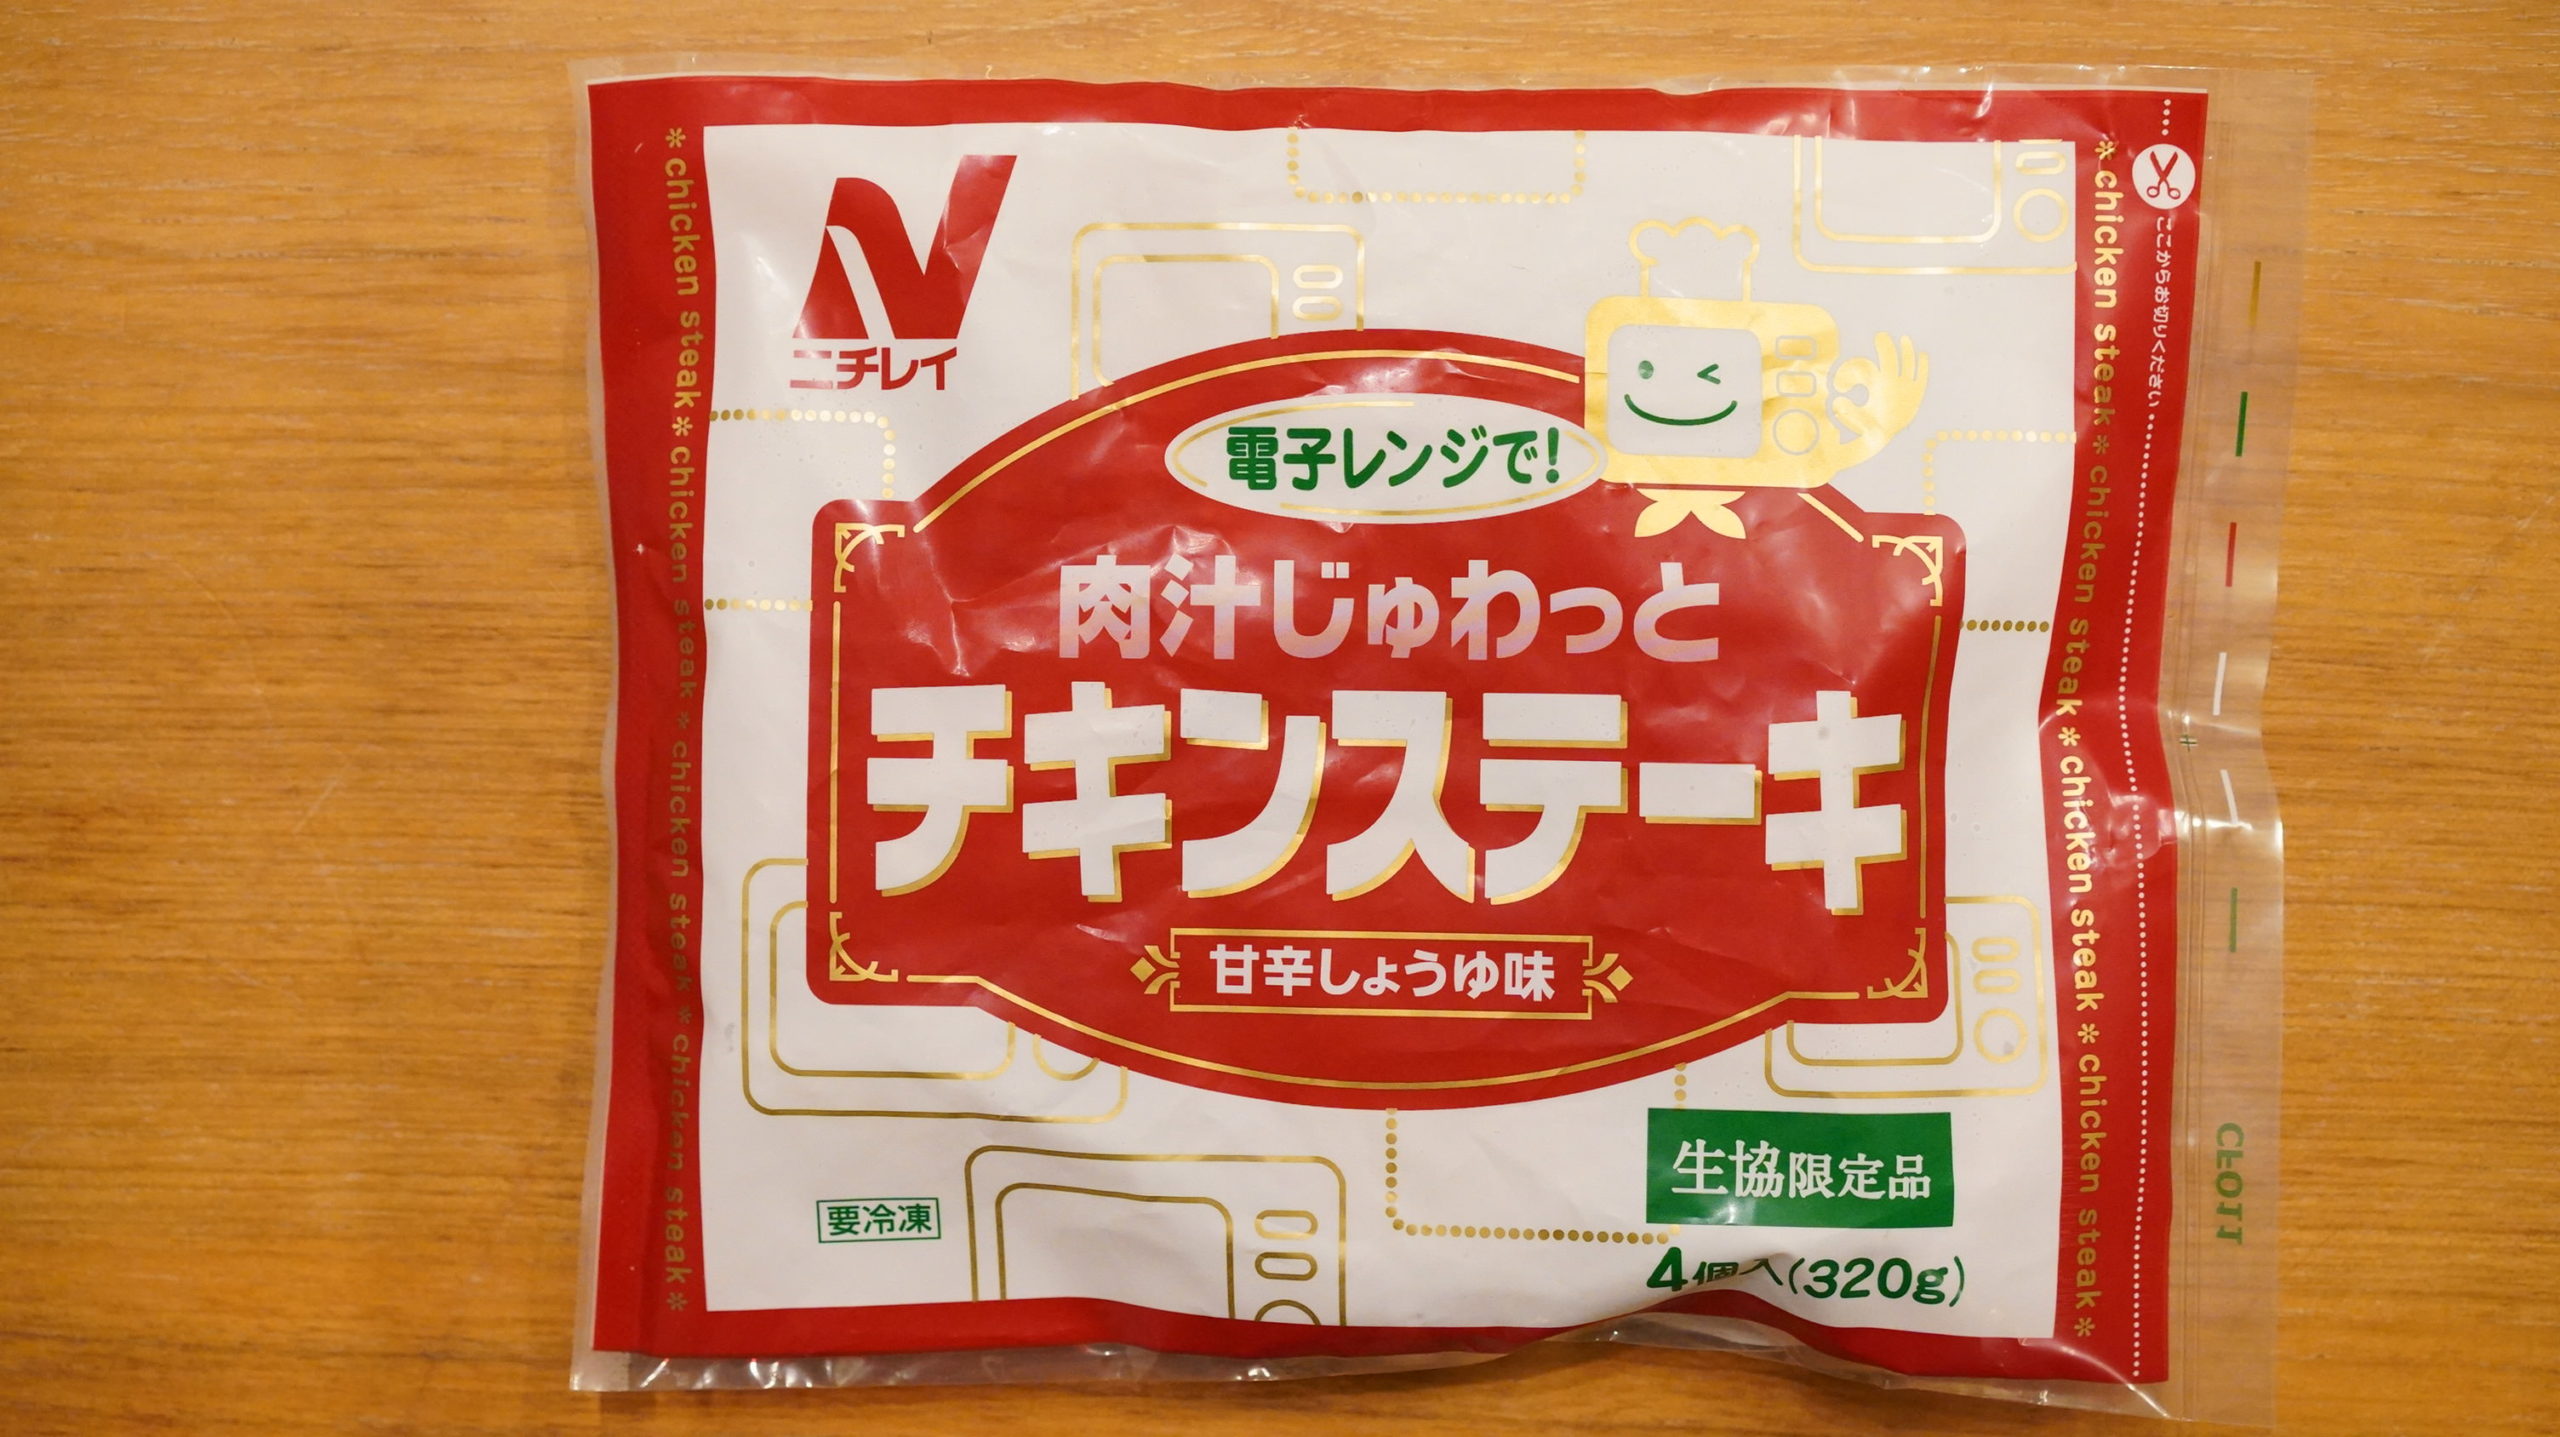 生協coop宅配の冷凍食品・ニチレイ「肉汁じゅわっとチキンステーキ」のパッケージ写真